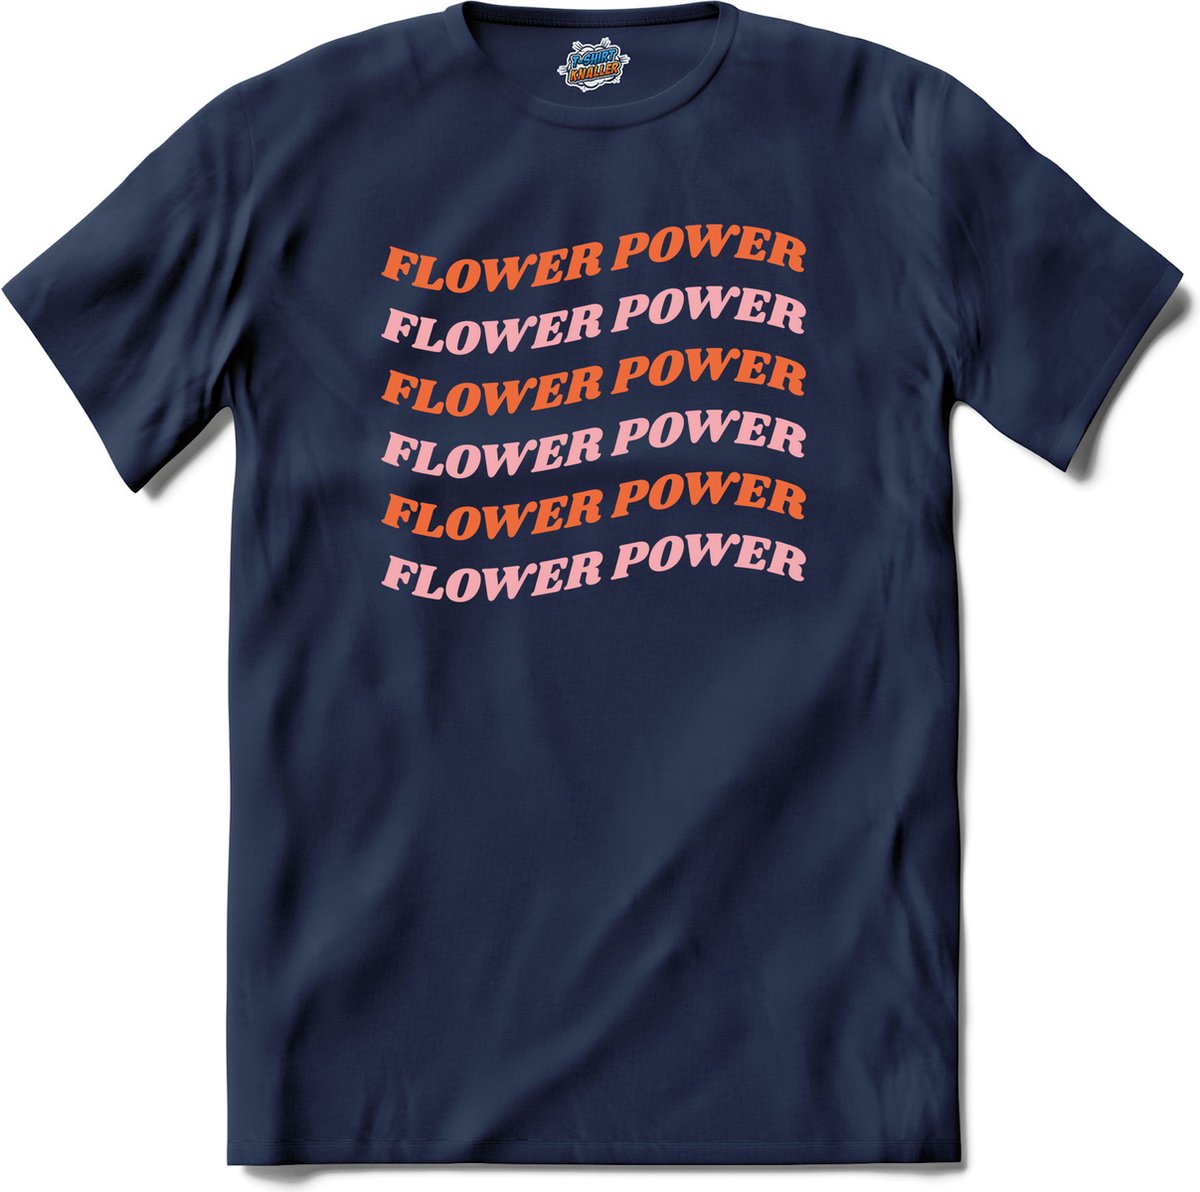 Flower power - T-Shirt - Heren - Navy Blue - Maat S